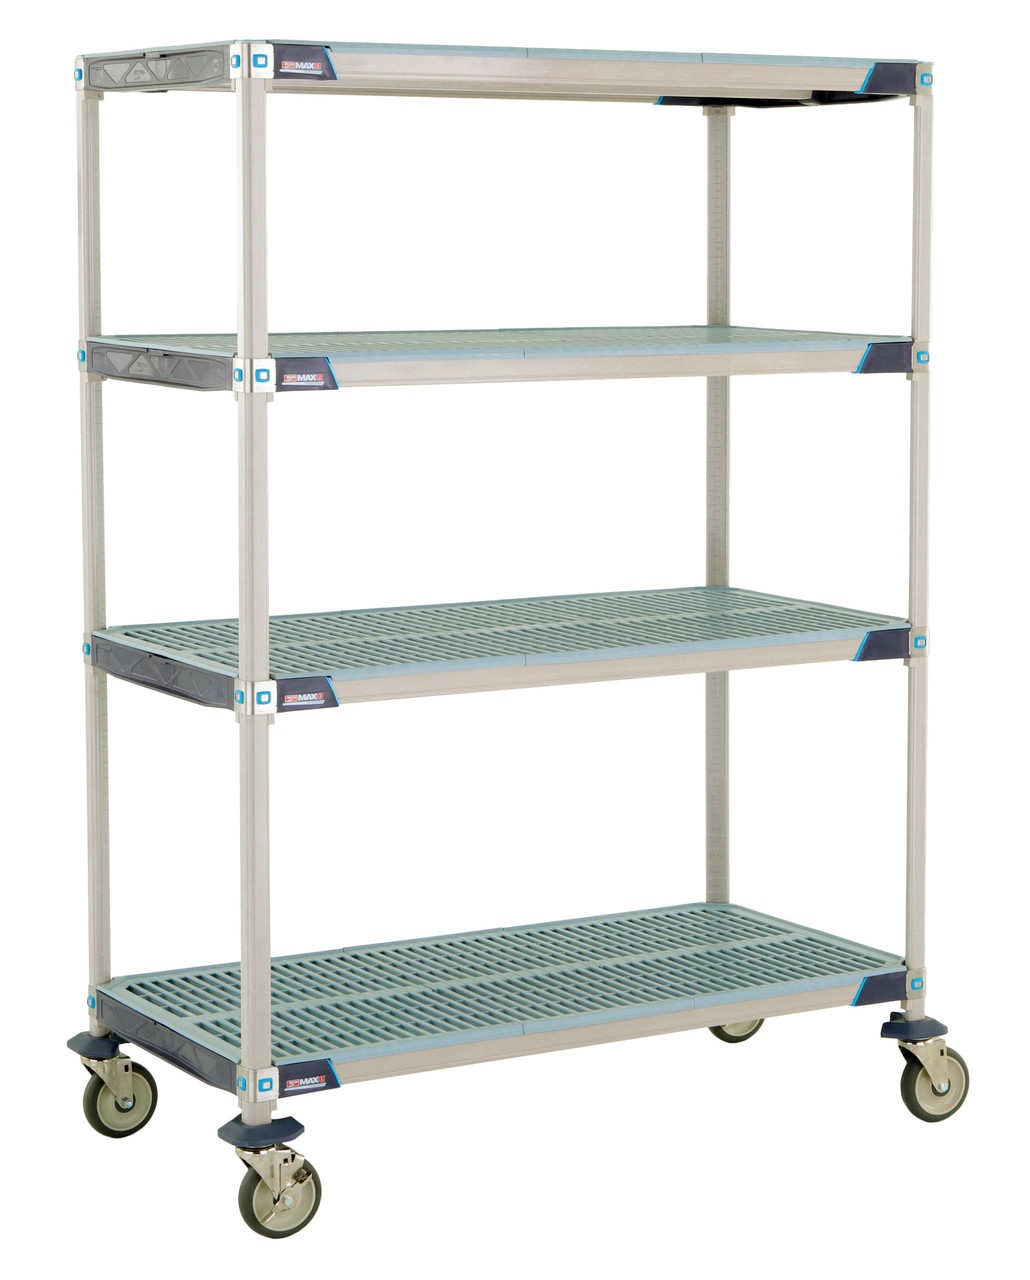 MetroMax i 4-Shelf Industrial Plastic Shelving Mobile Cart, Open Grid  Shelves - Metro